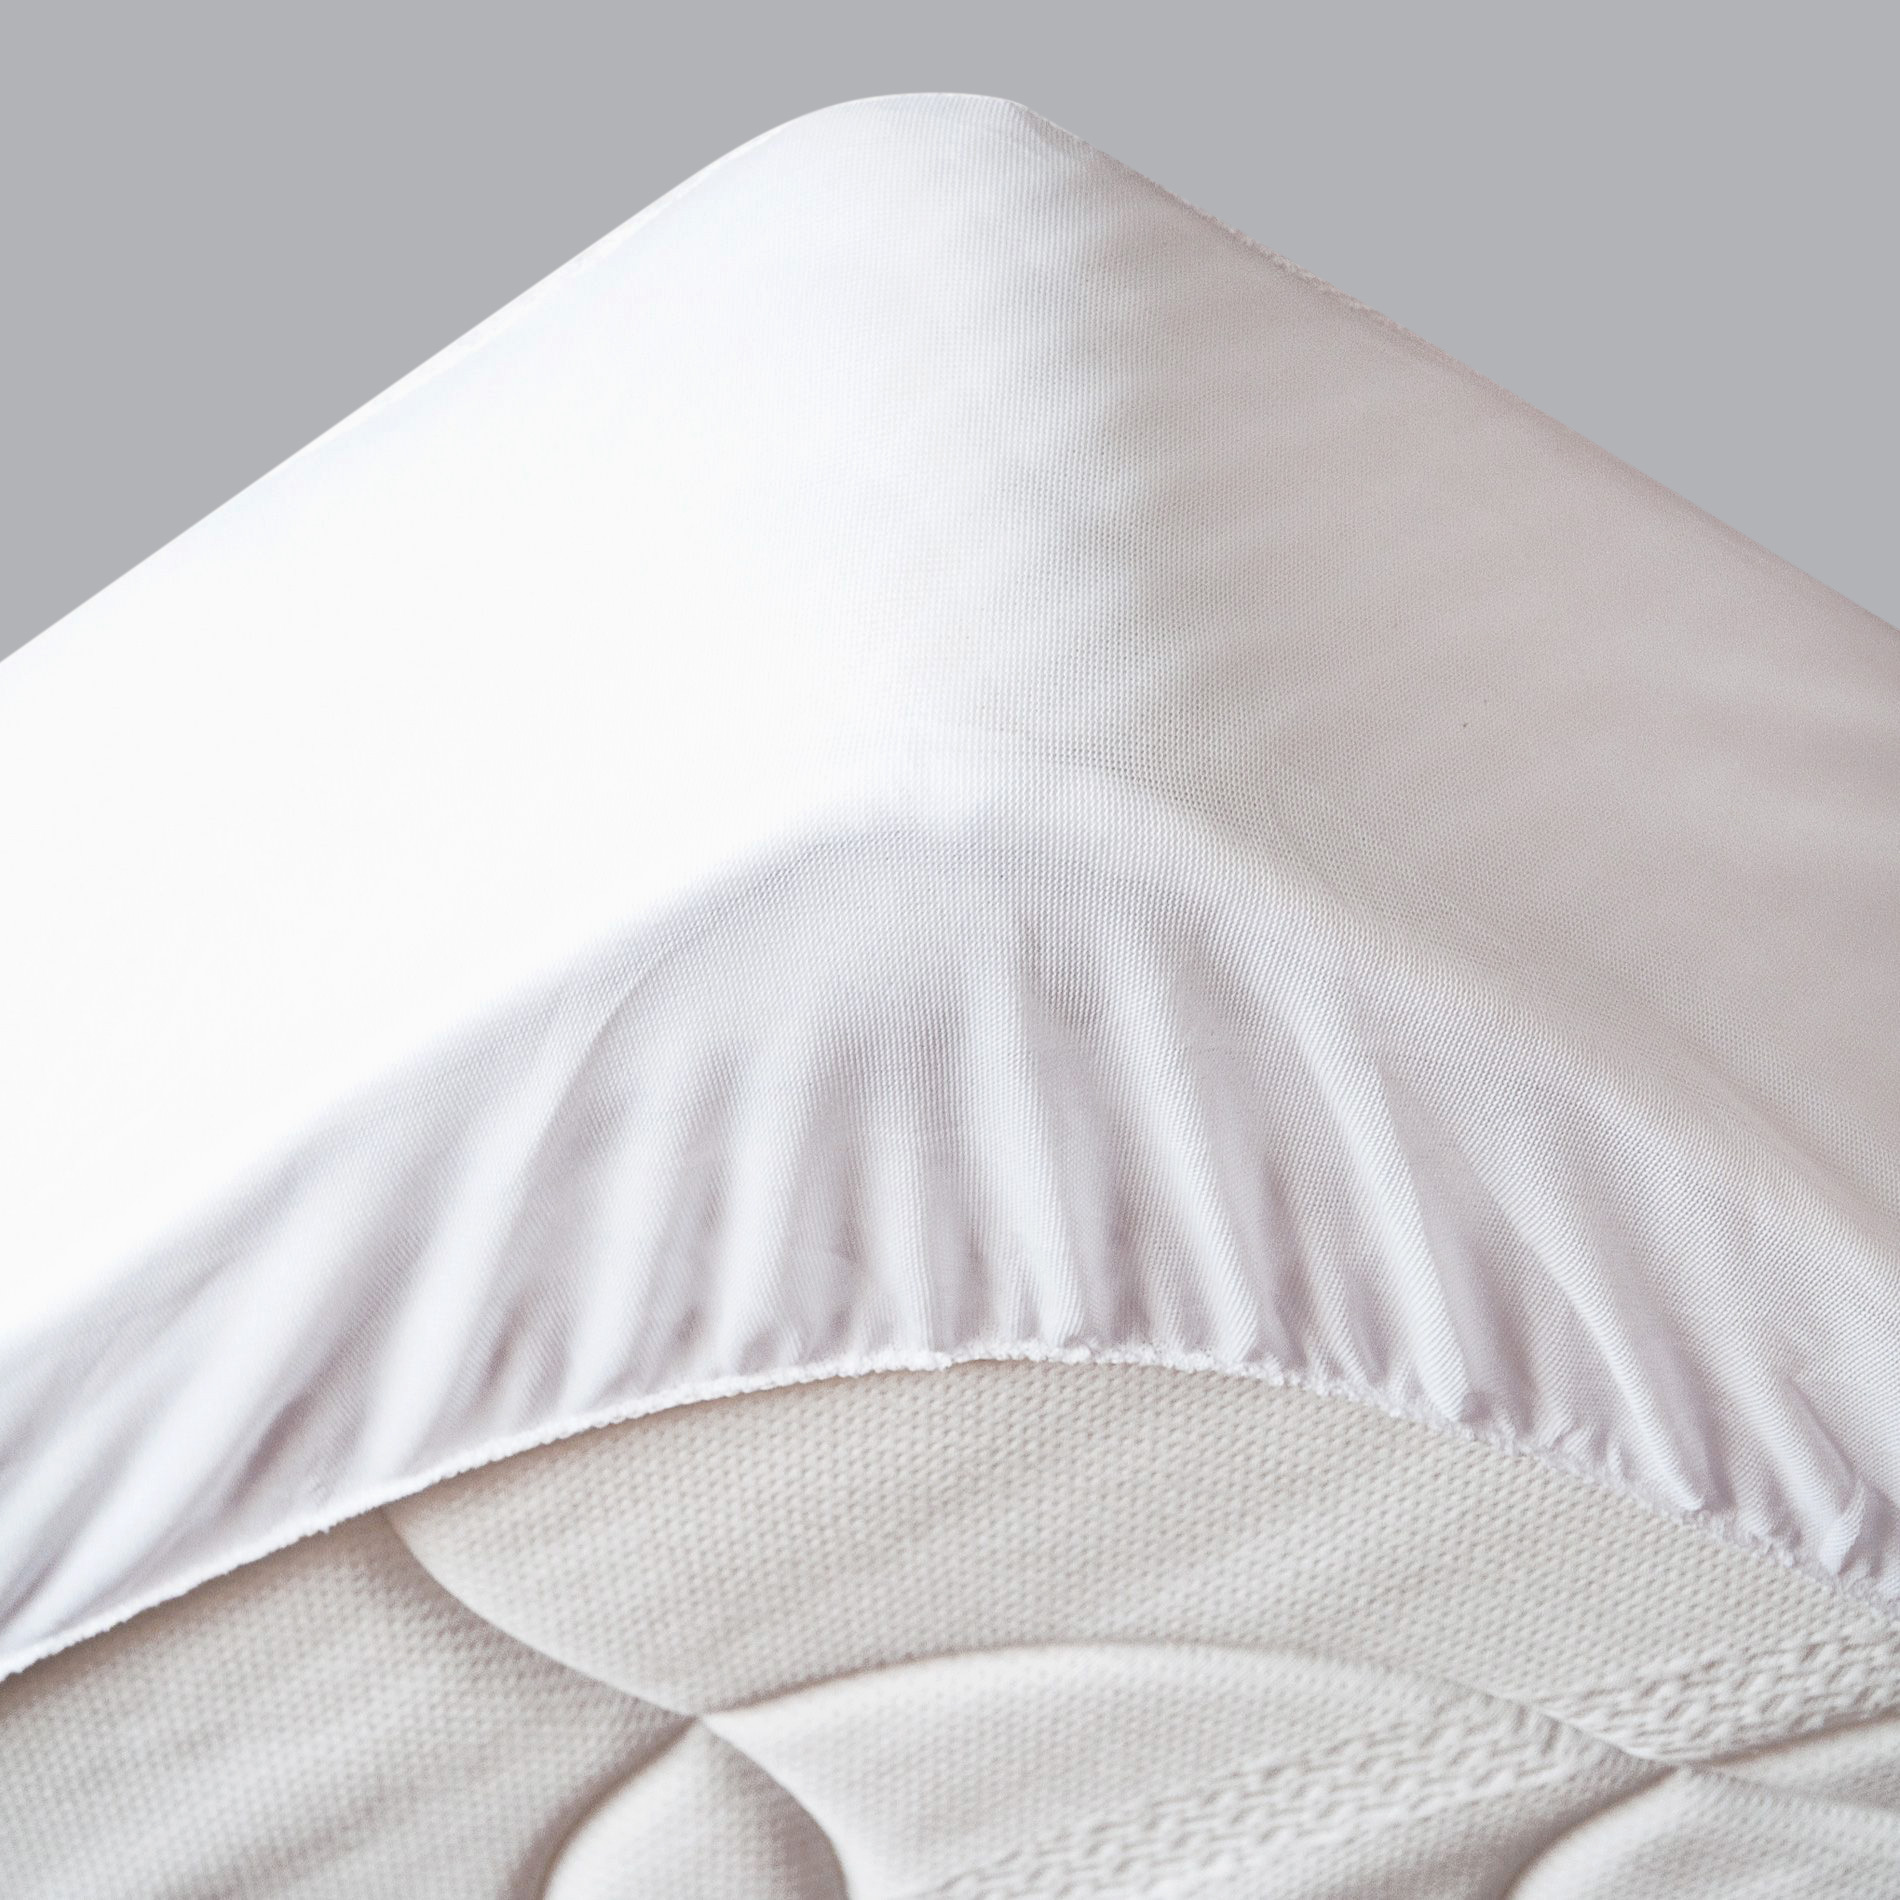 Protège-matelas imperméable (160 x 200 cm) Tricia Blanc - Linge de